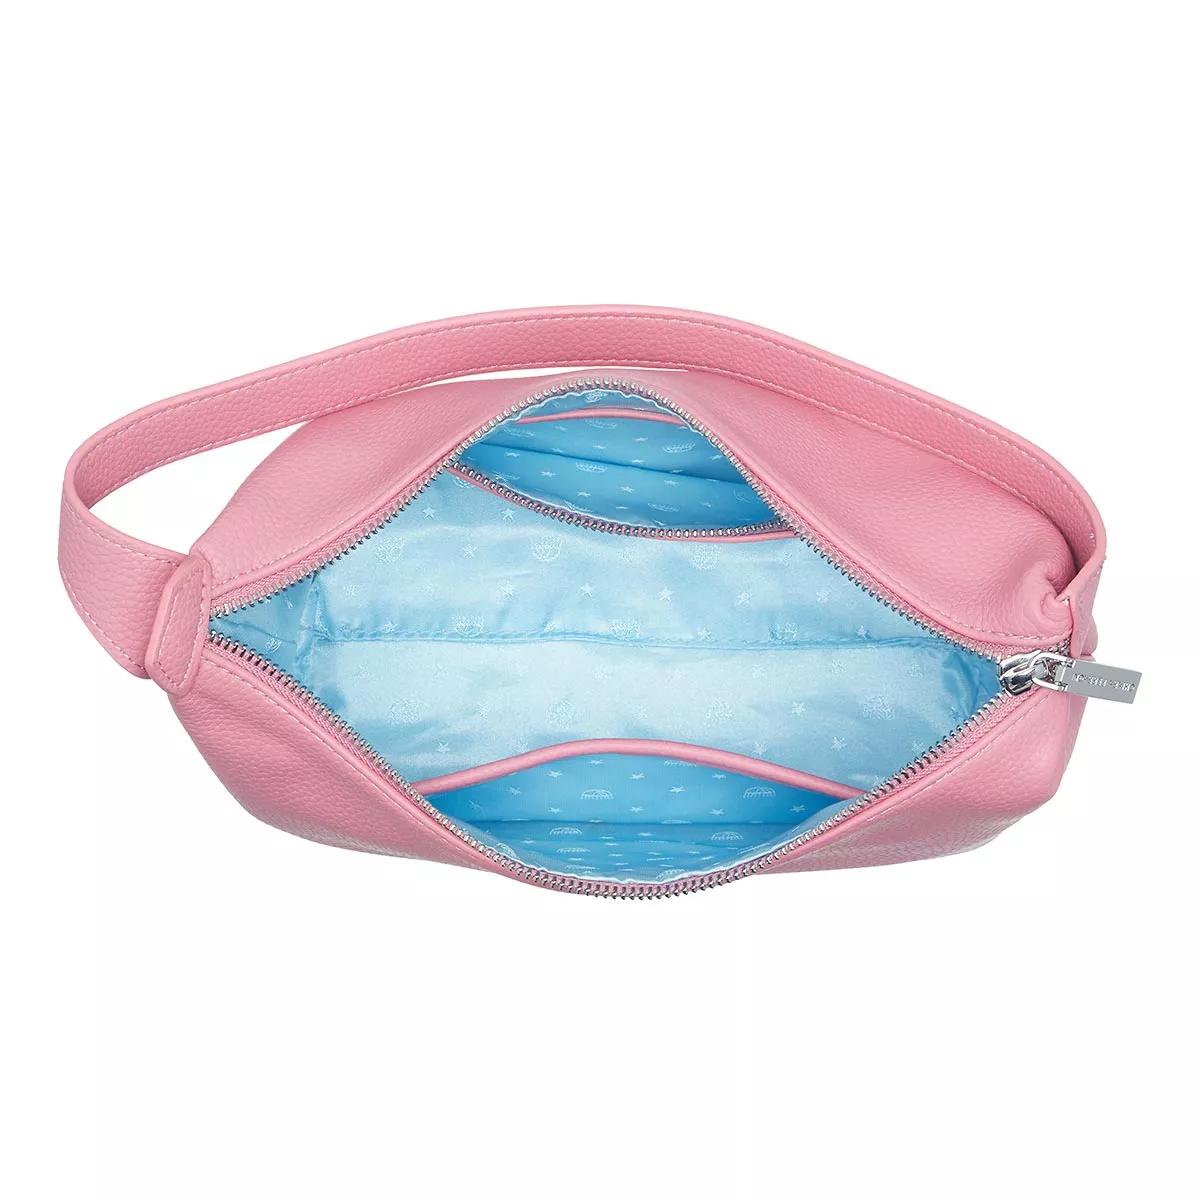 Chiara Ferragni Hobo bags Range E Eye Star Lock Sketch 03 Bags in roze